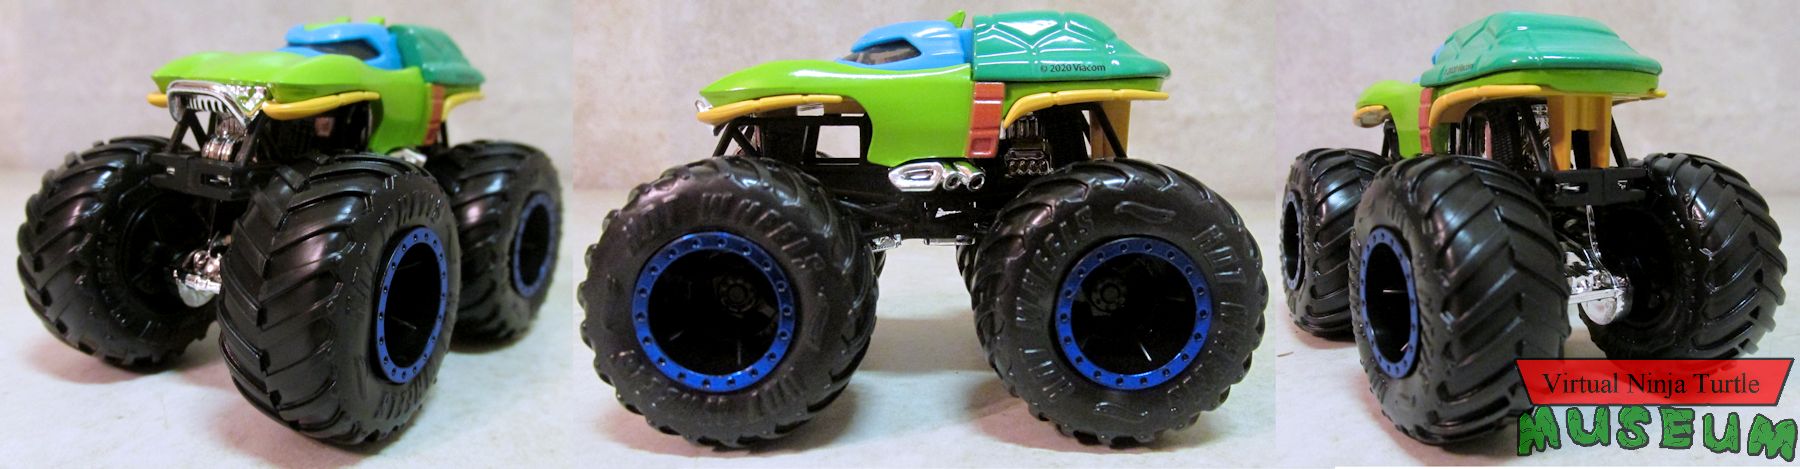 Hot Wheels Monster truck Leonardo front, side and back